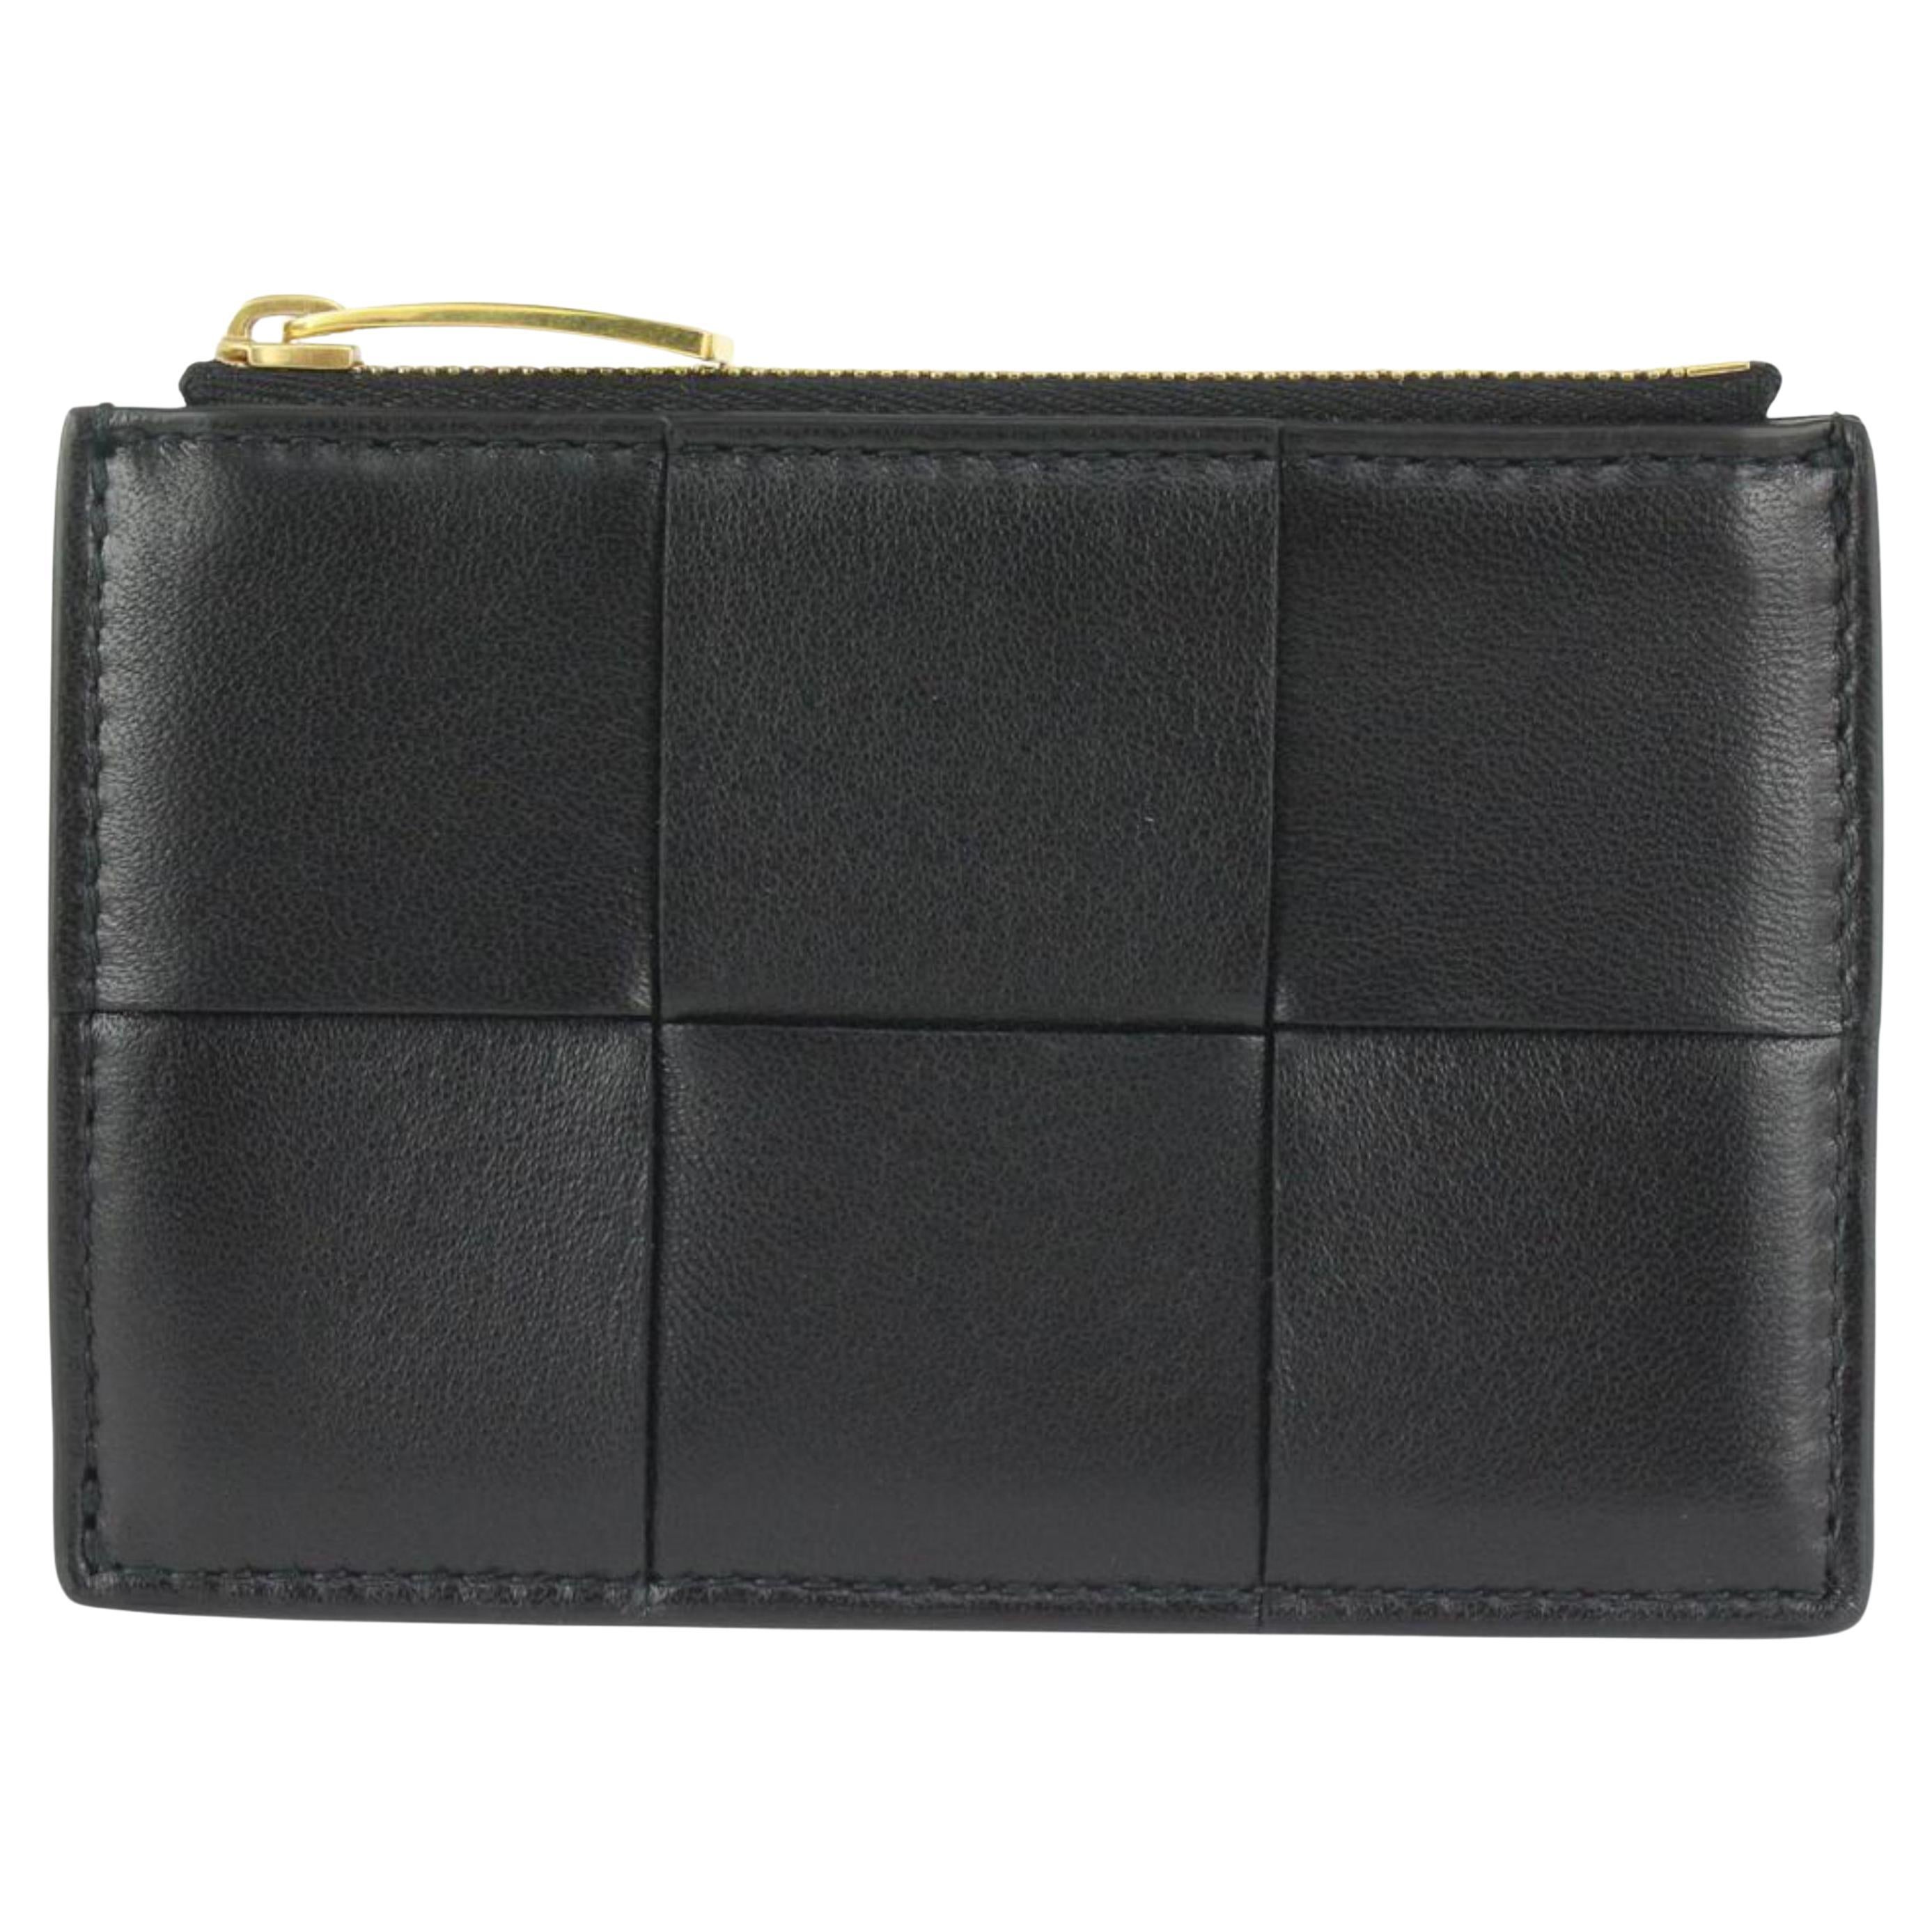 Bottega Veneta Black Intrecciato Leather Zipped Card Holder 1123bv34 For Sale